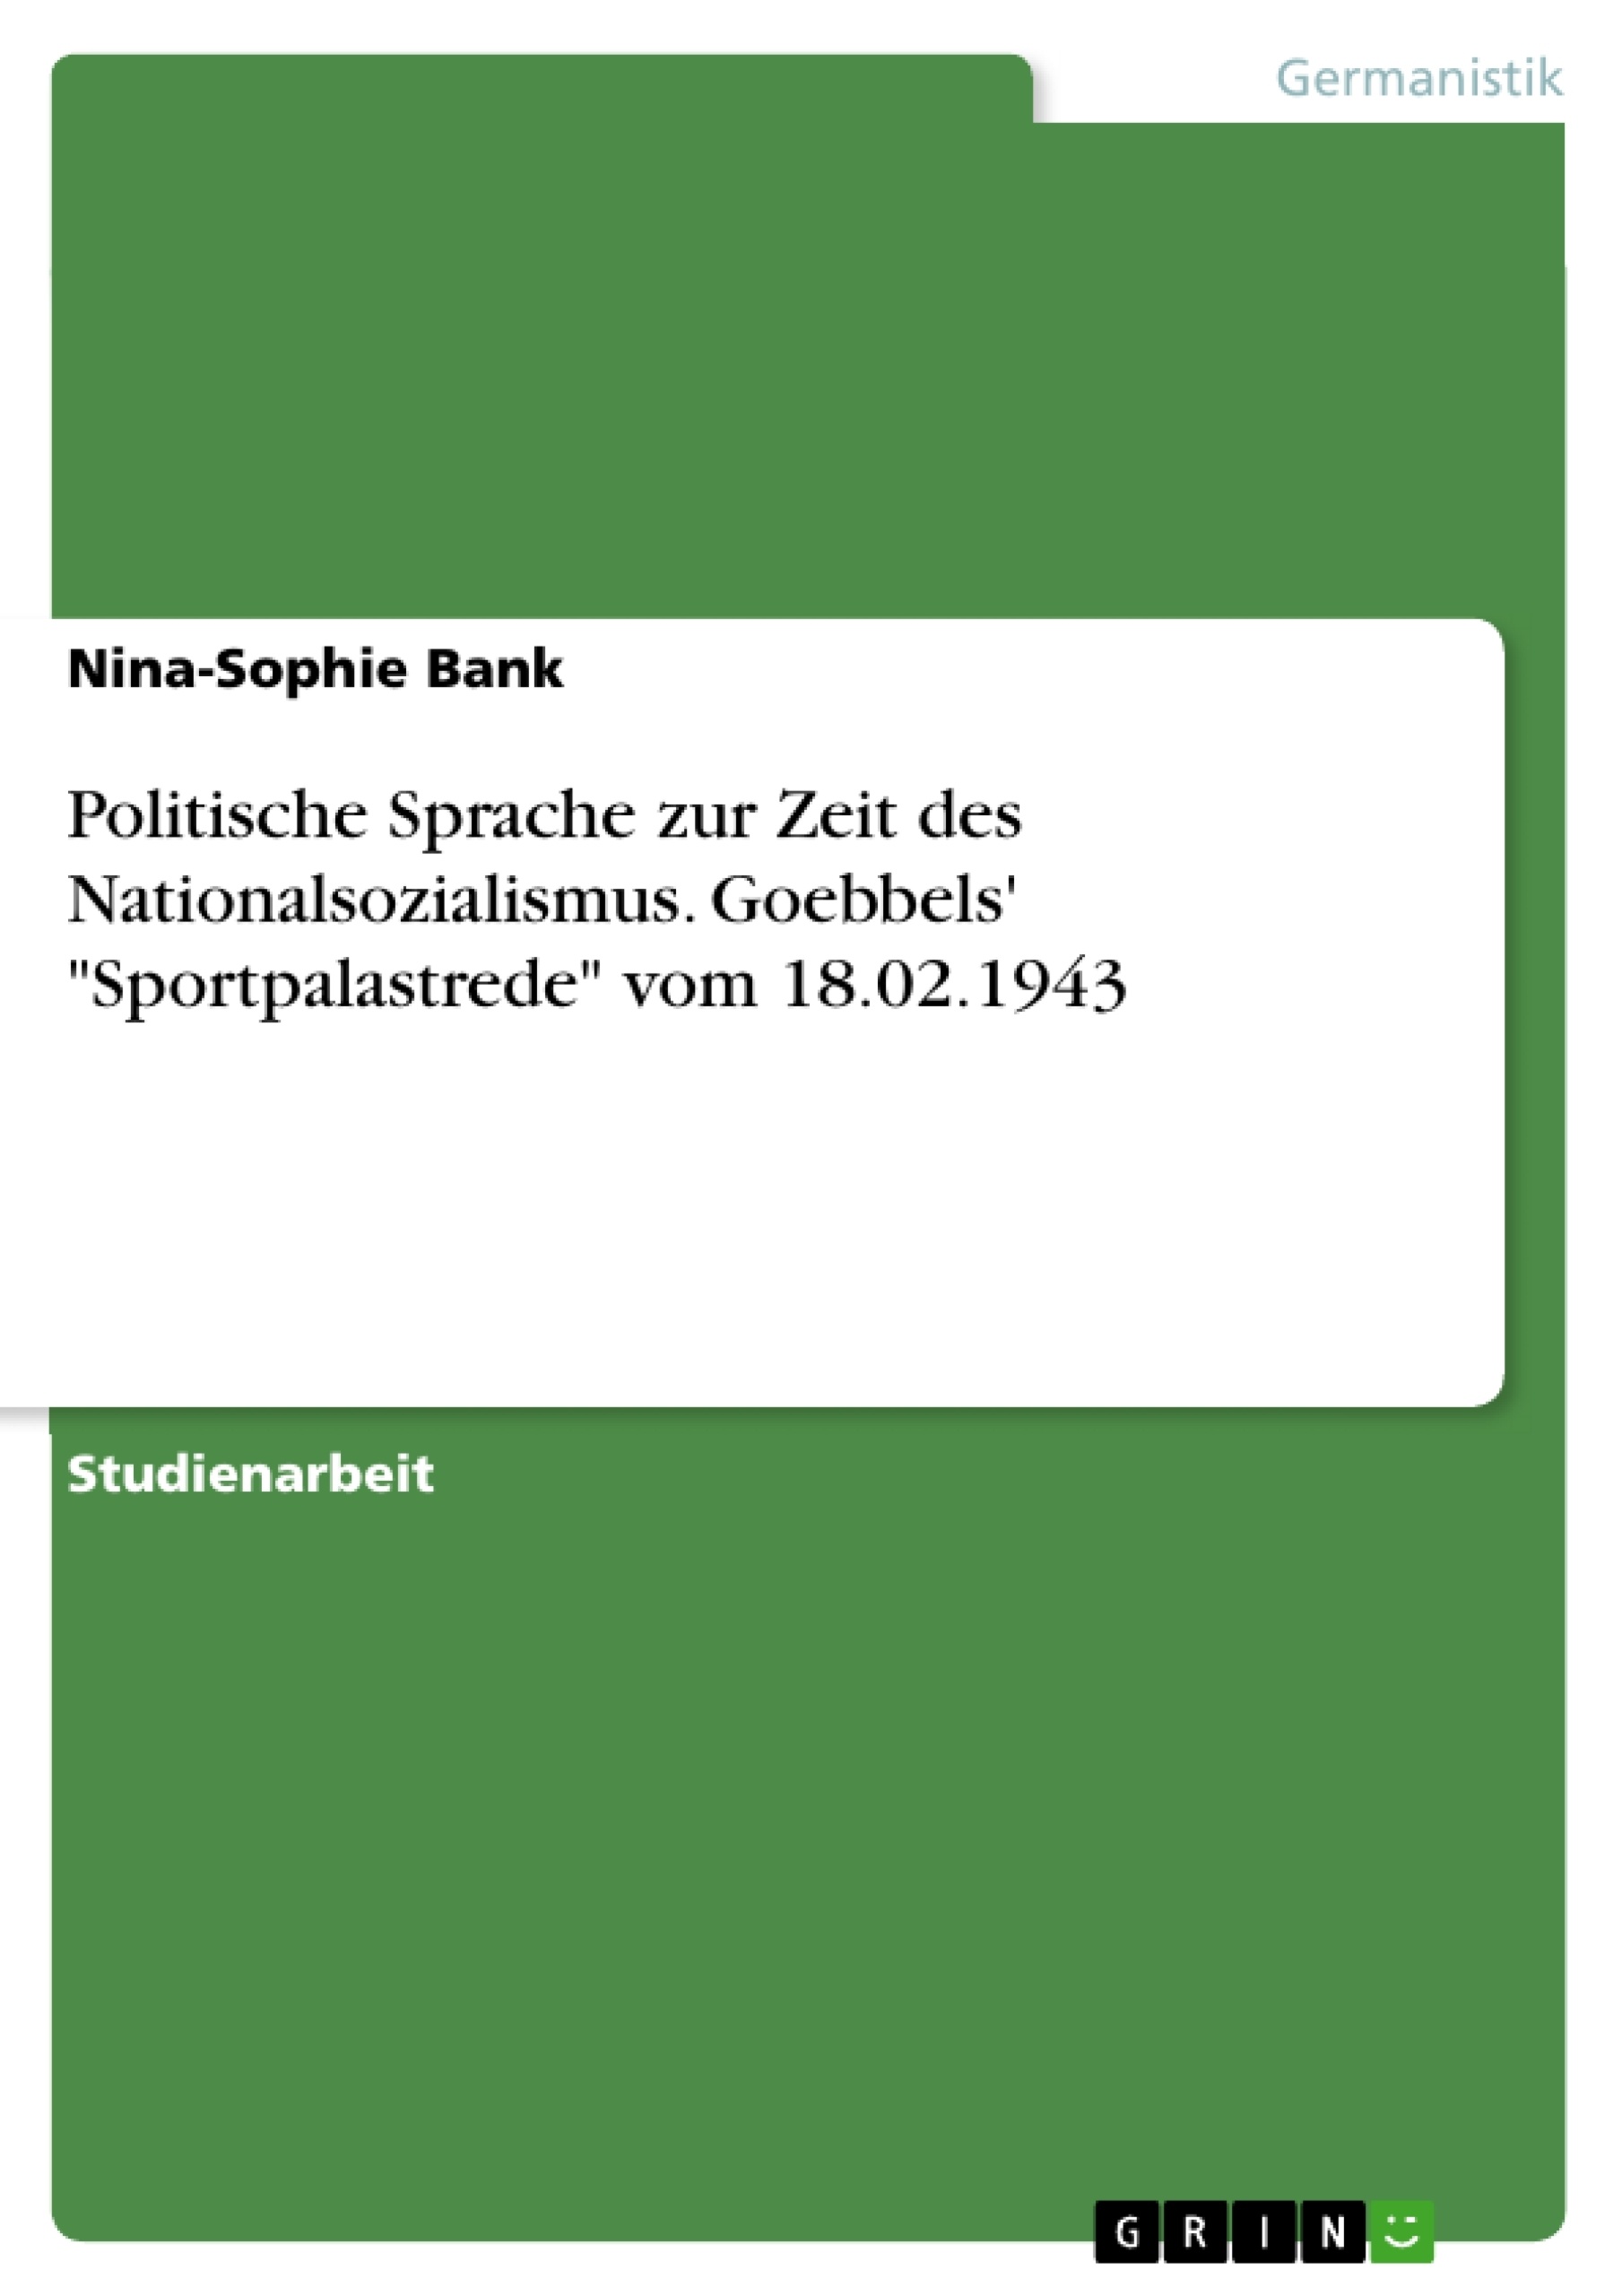 Título: Politische Sprache zur Zeit des Nationalsozialismus. Goebbels' "Sportpalastrede" vom 18.02.1943